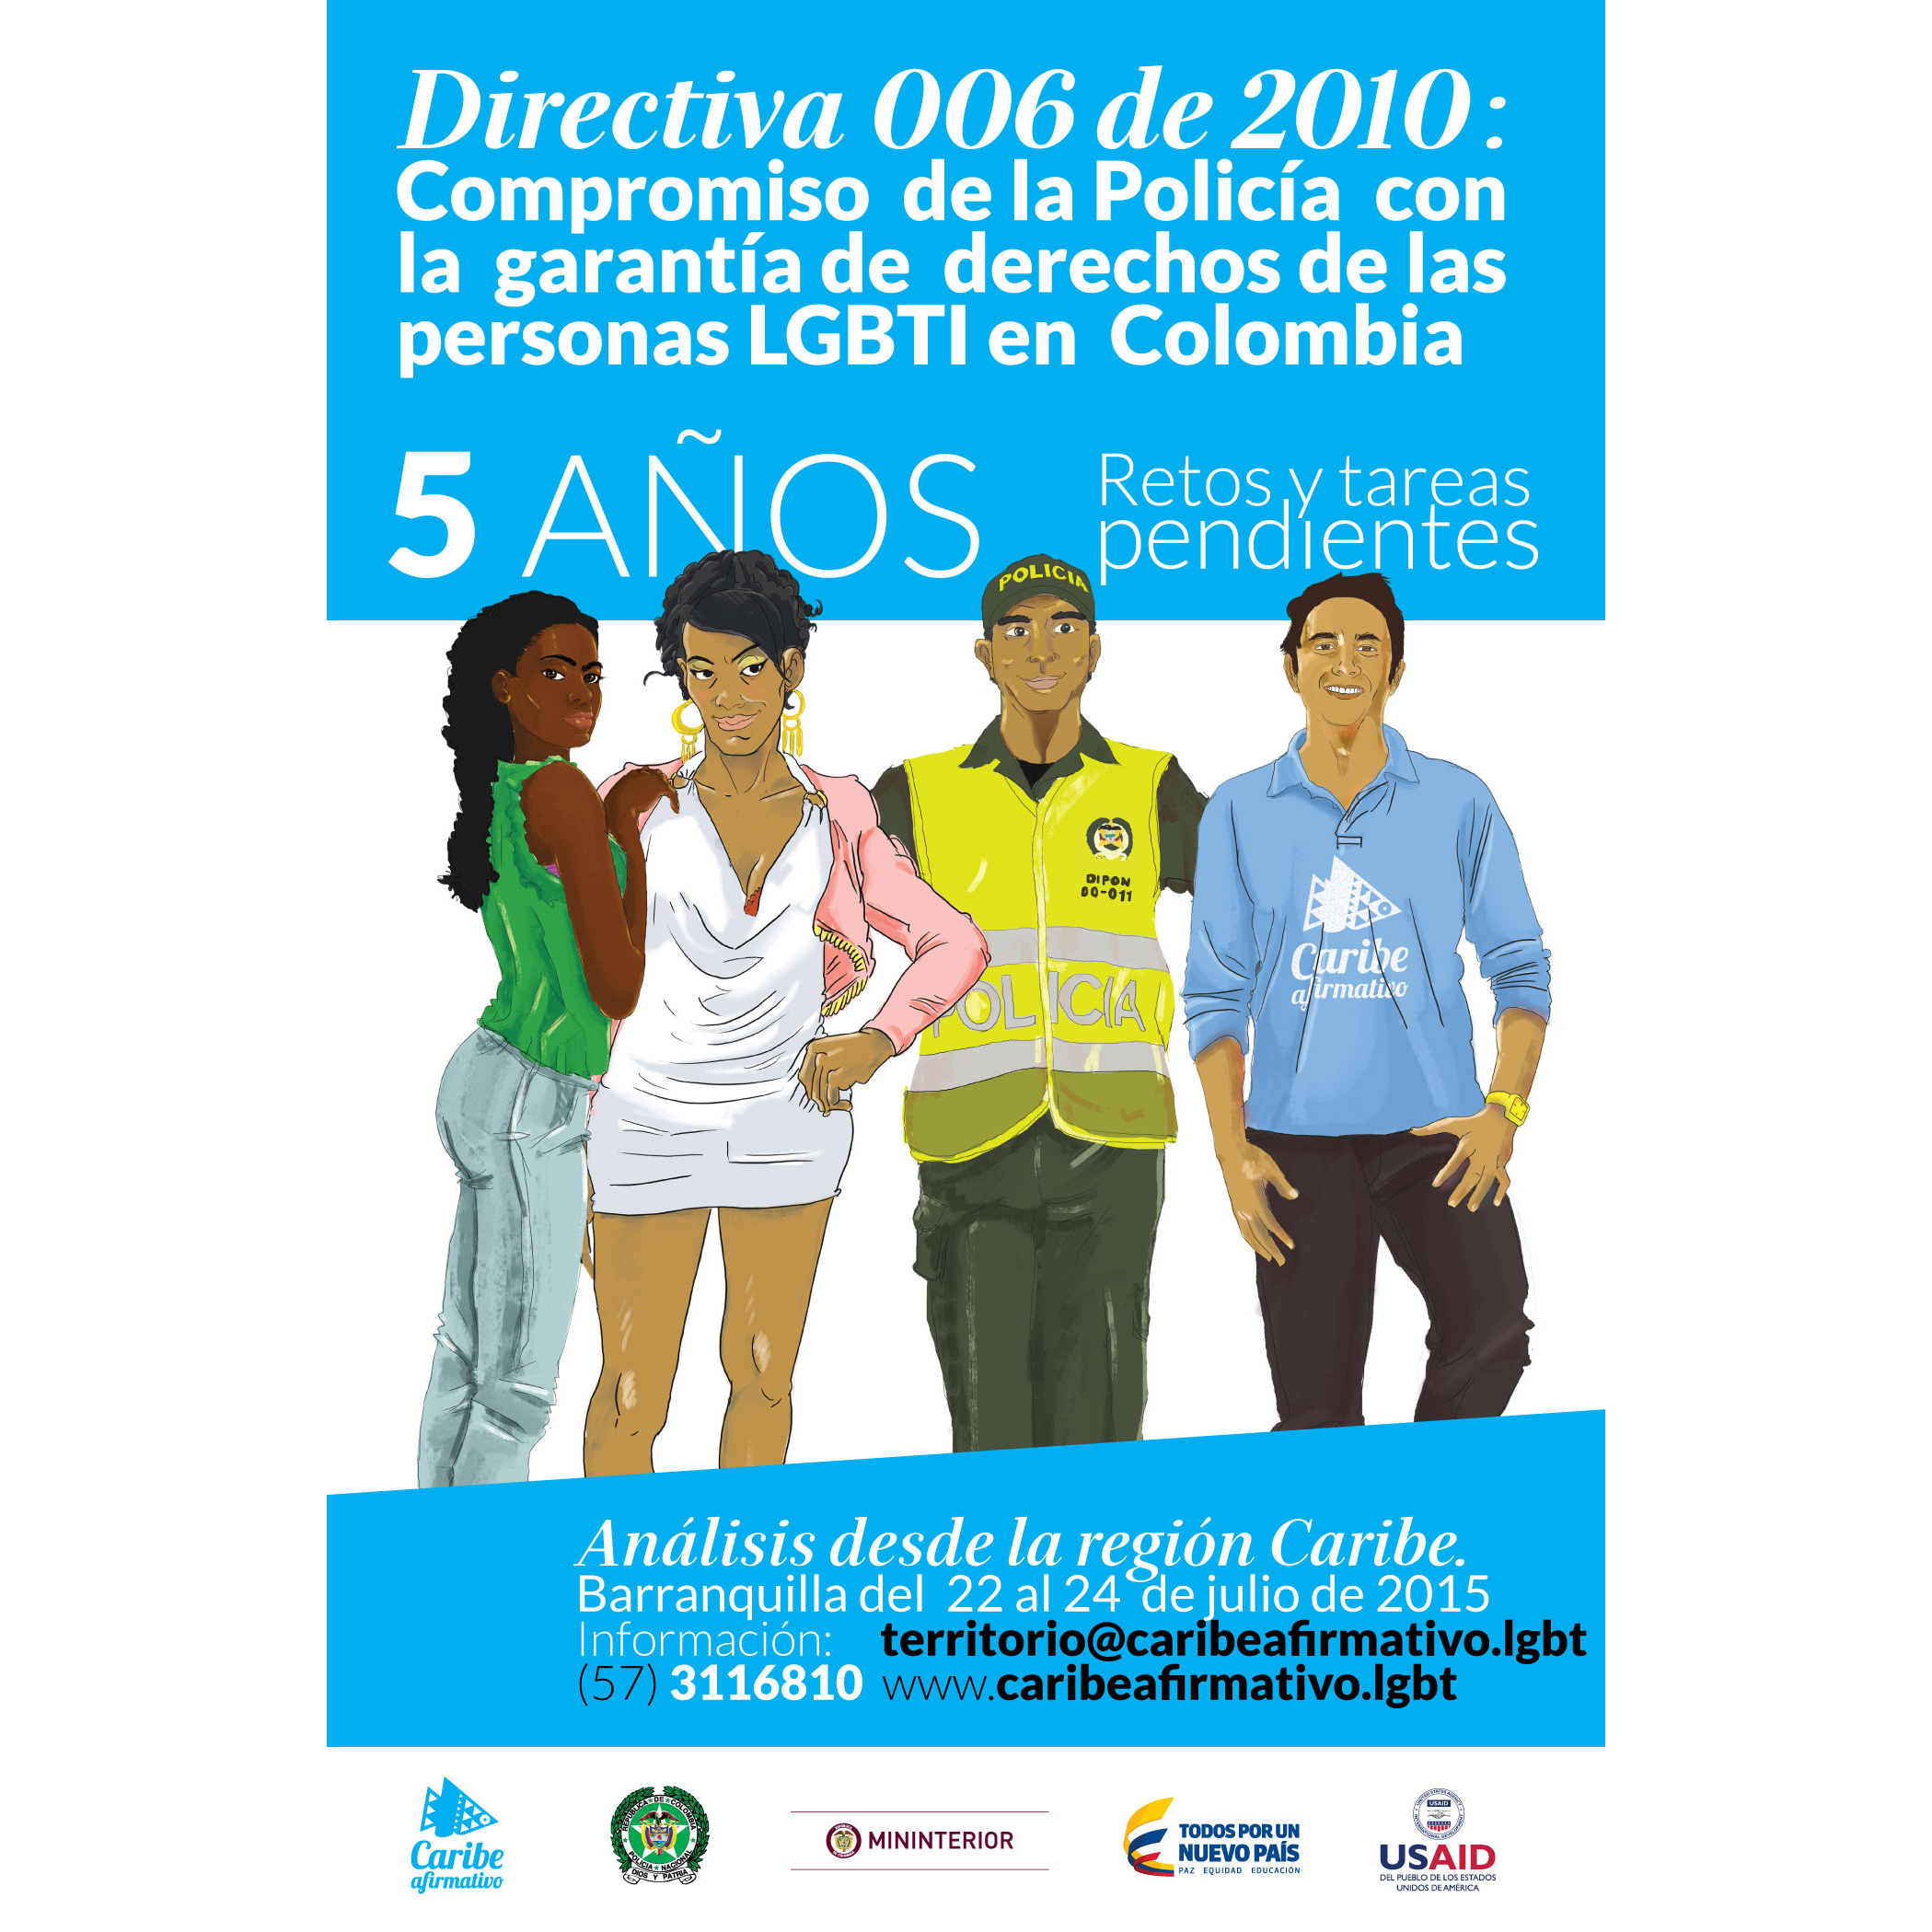 Directiva 006 de 2010: compromiso de la Policía con la garantía de derechos de las persona LGBTI en Colombia. 5 años - retos y tareas pendientes. Análisis desde la región Caribe. Barranquilla del 22 al 24 de julio de 2015. Información: territorio@caribeafirmativo.lgbt - (57) 3116810 - www.caribeafirmativo.lgbt - Corporación Caribe Afirmativo - Policía Nacional - Ministerio del Interior - Todos por un Nuevo País - USAID